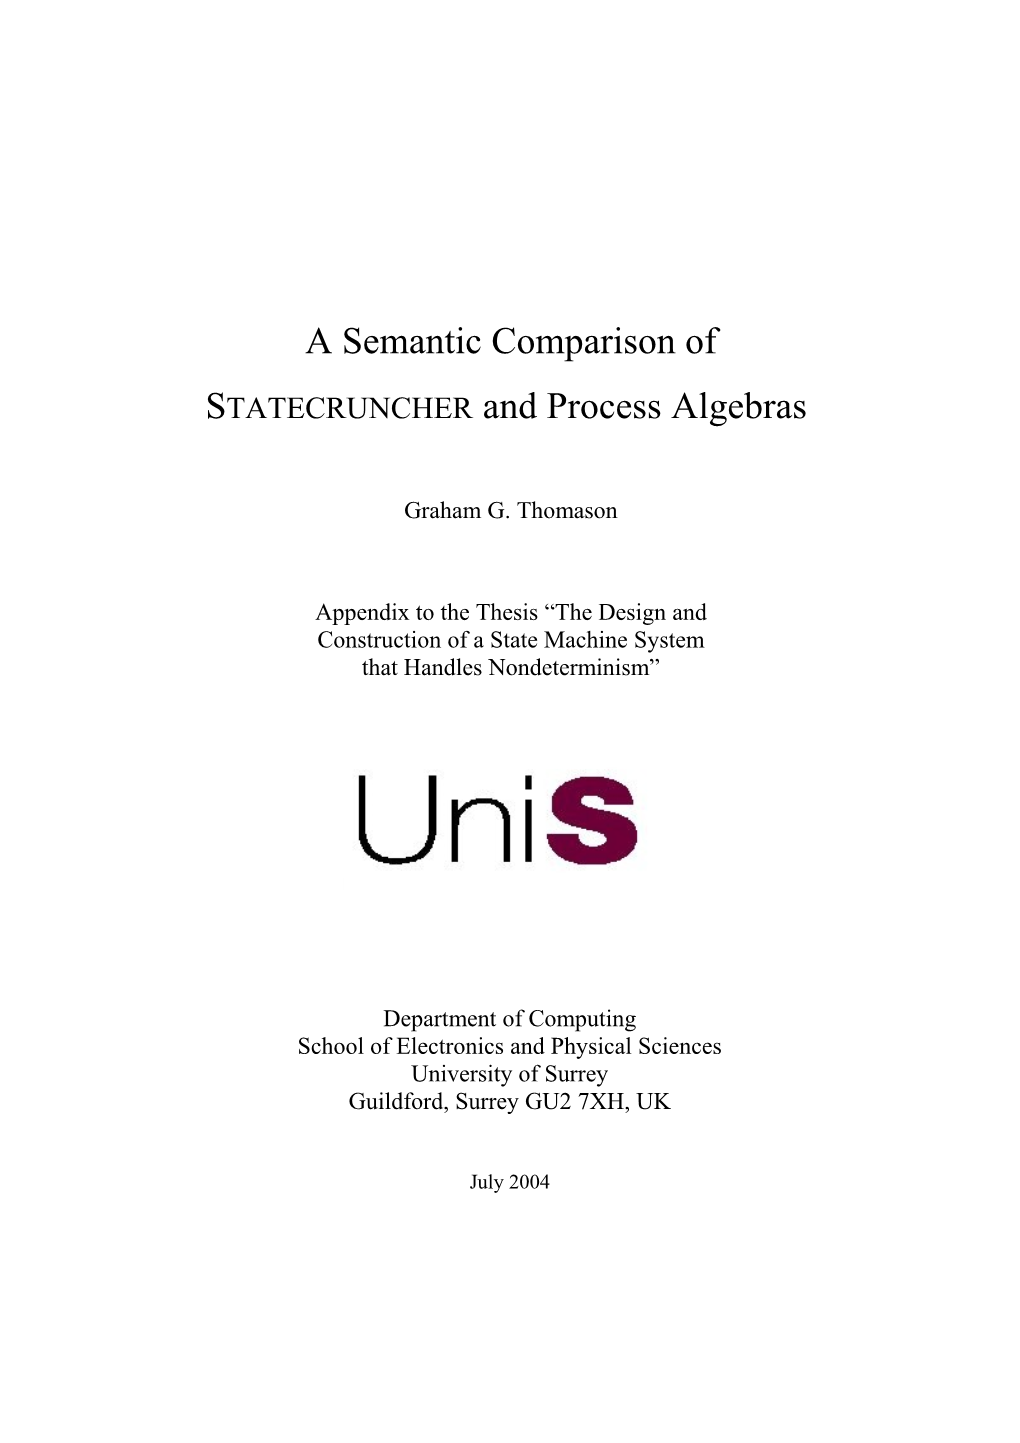 A Semantic Comparison of STATECRUNCHER and Process Algebras